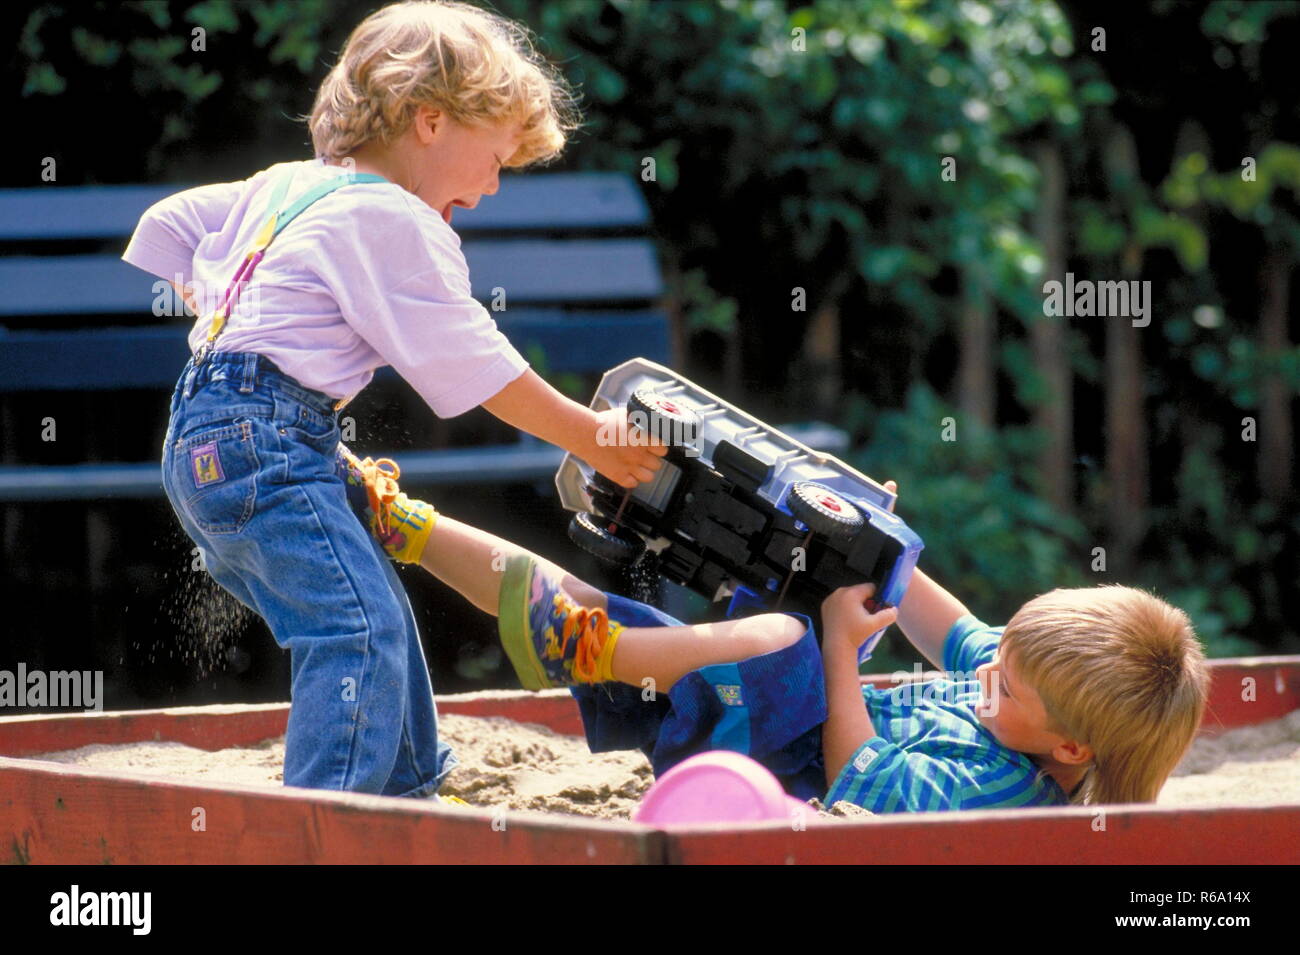 Portrait, Parkszene, 2 Jungen, 5 Jahre, streiten sich im Sandkasten um  einen grossen Spielzeuglaster Stock Photo - Alamy